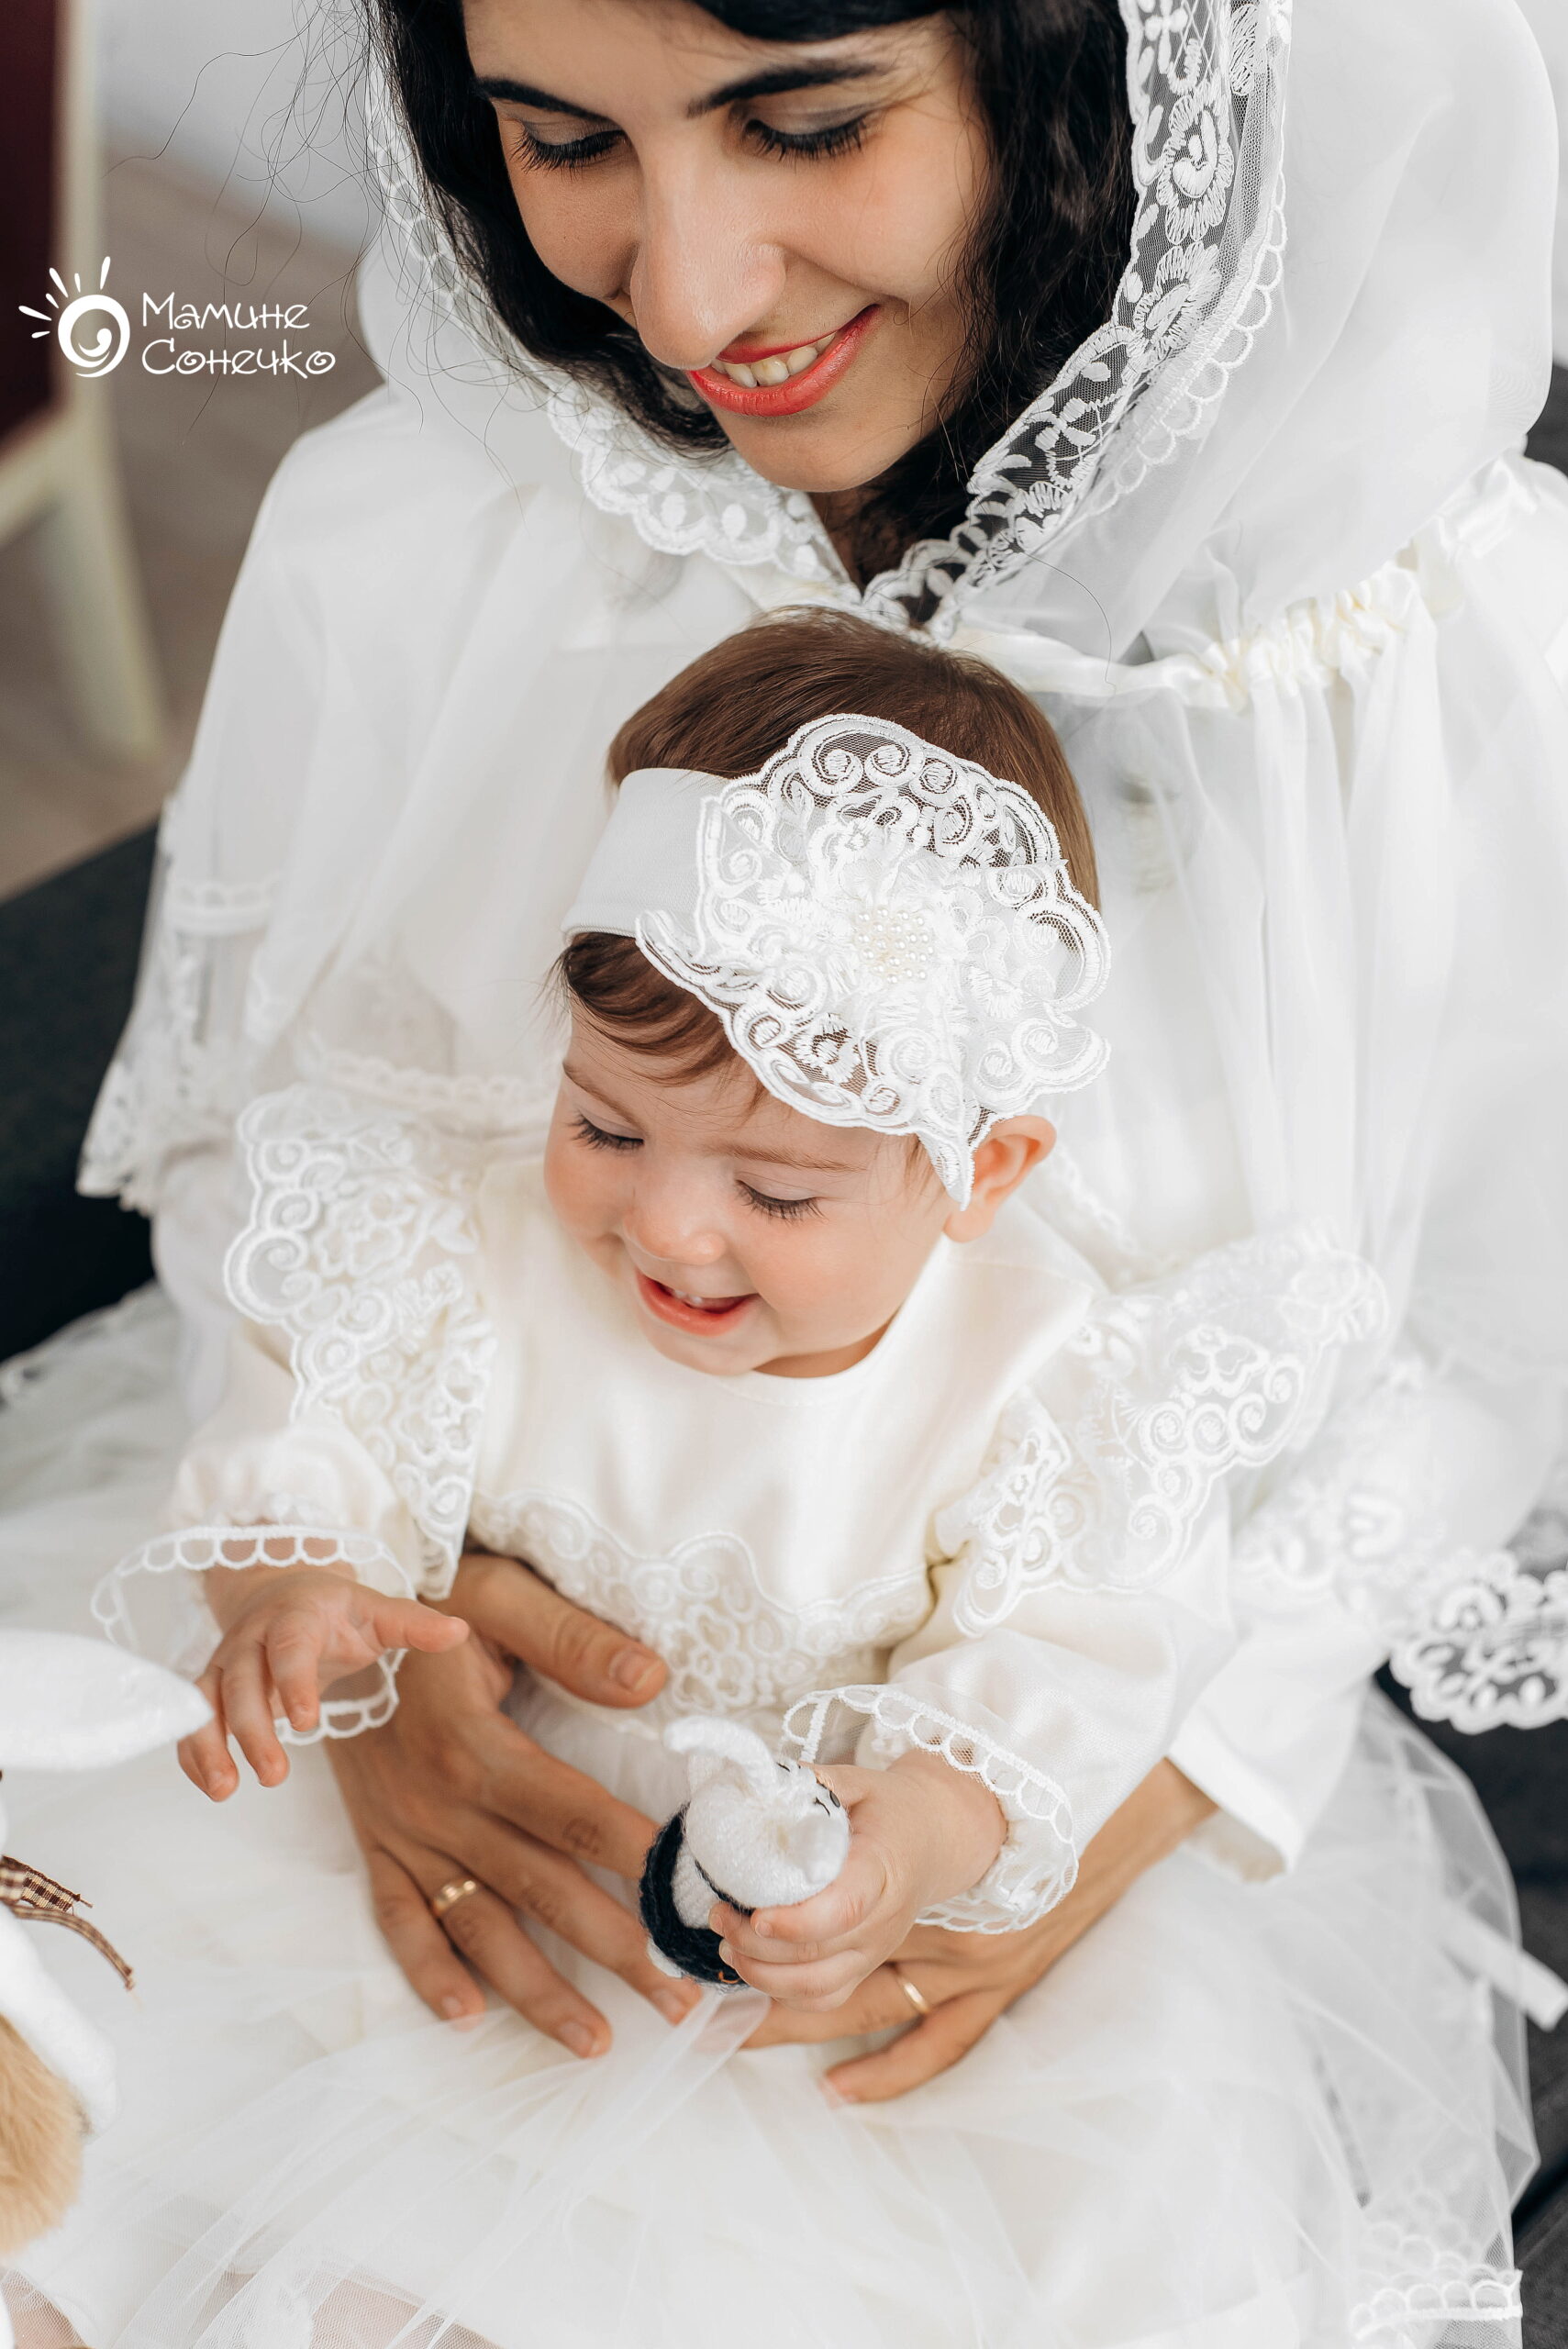 Набор одежды для крещения девочки “Принцесса-рококо” айвори, лен